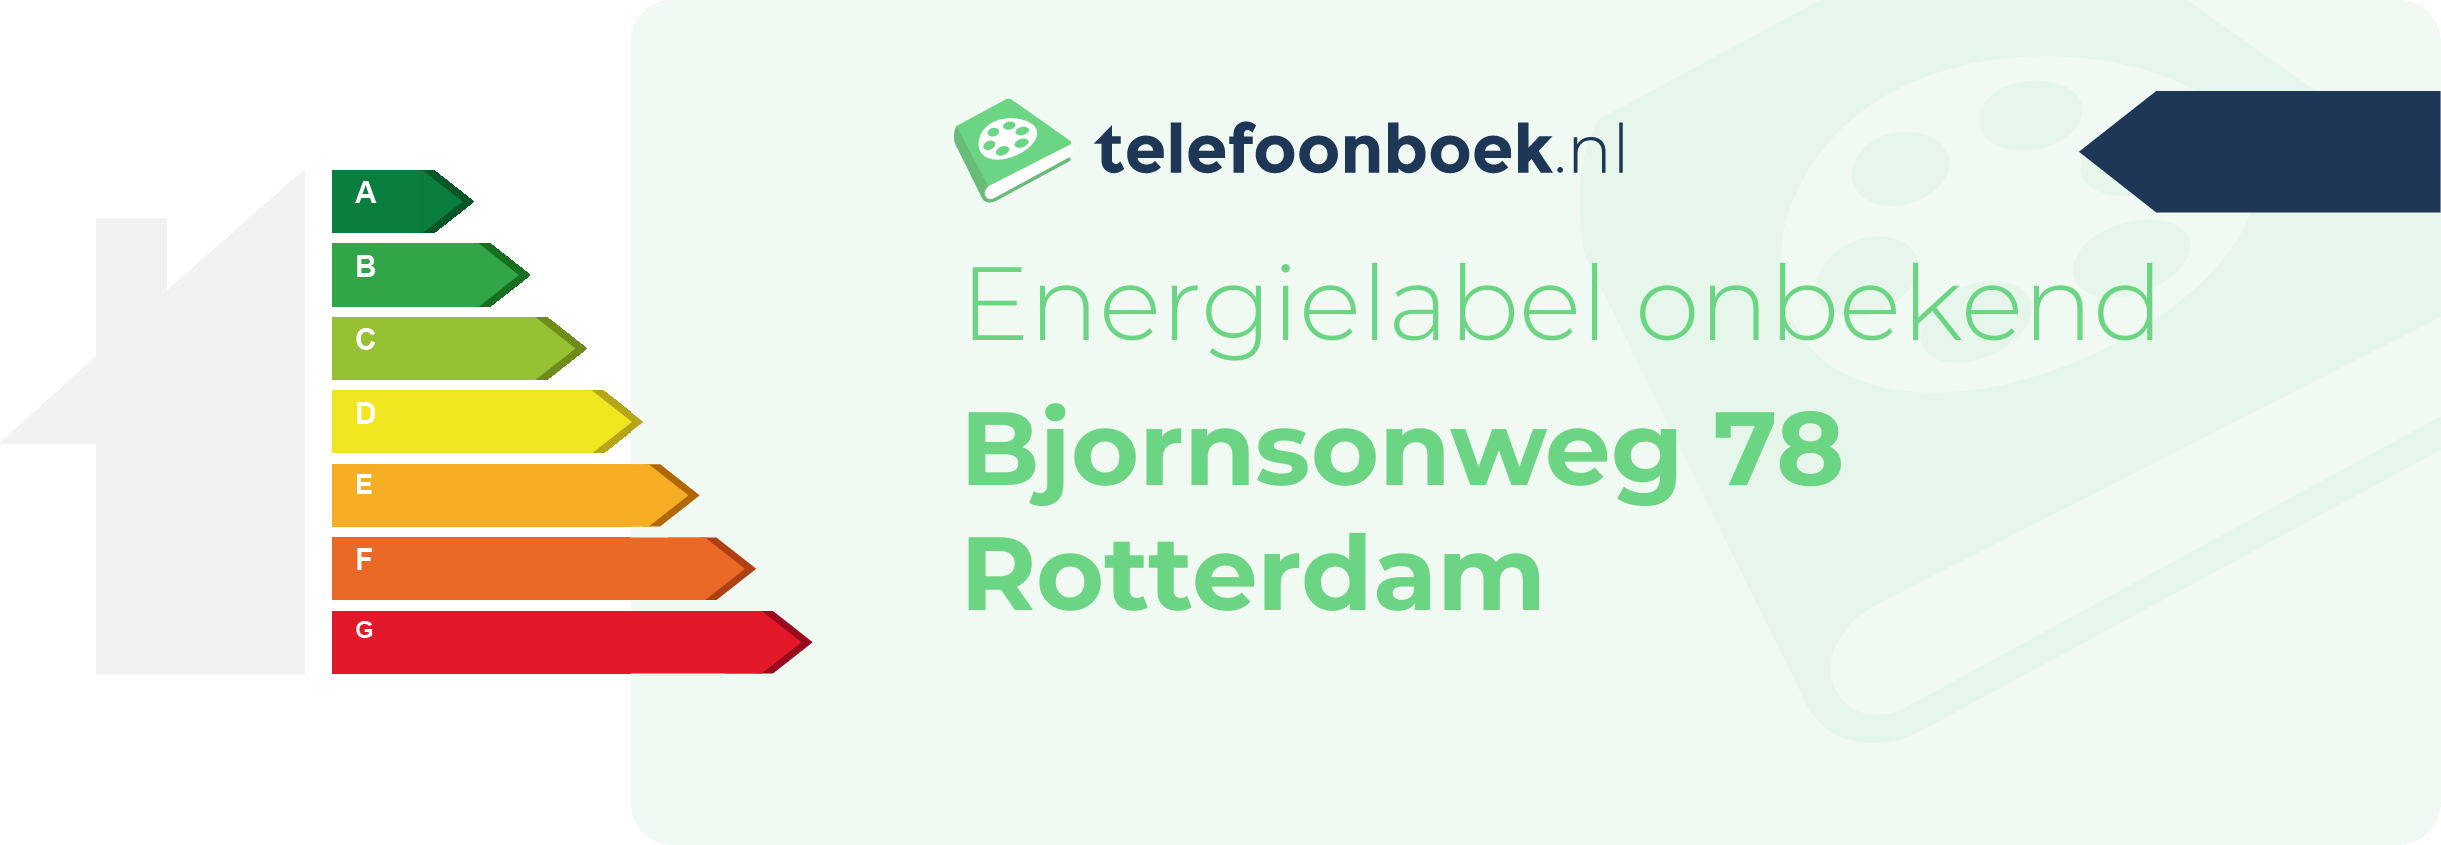 Energielabel Bjornsonweg 78 Rotterdam